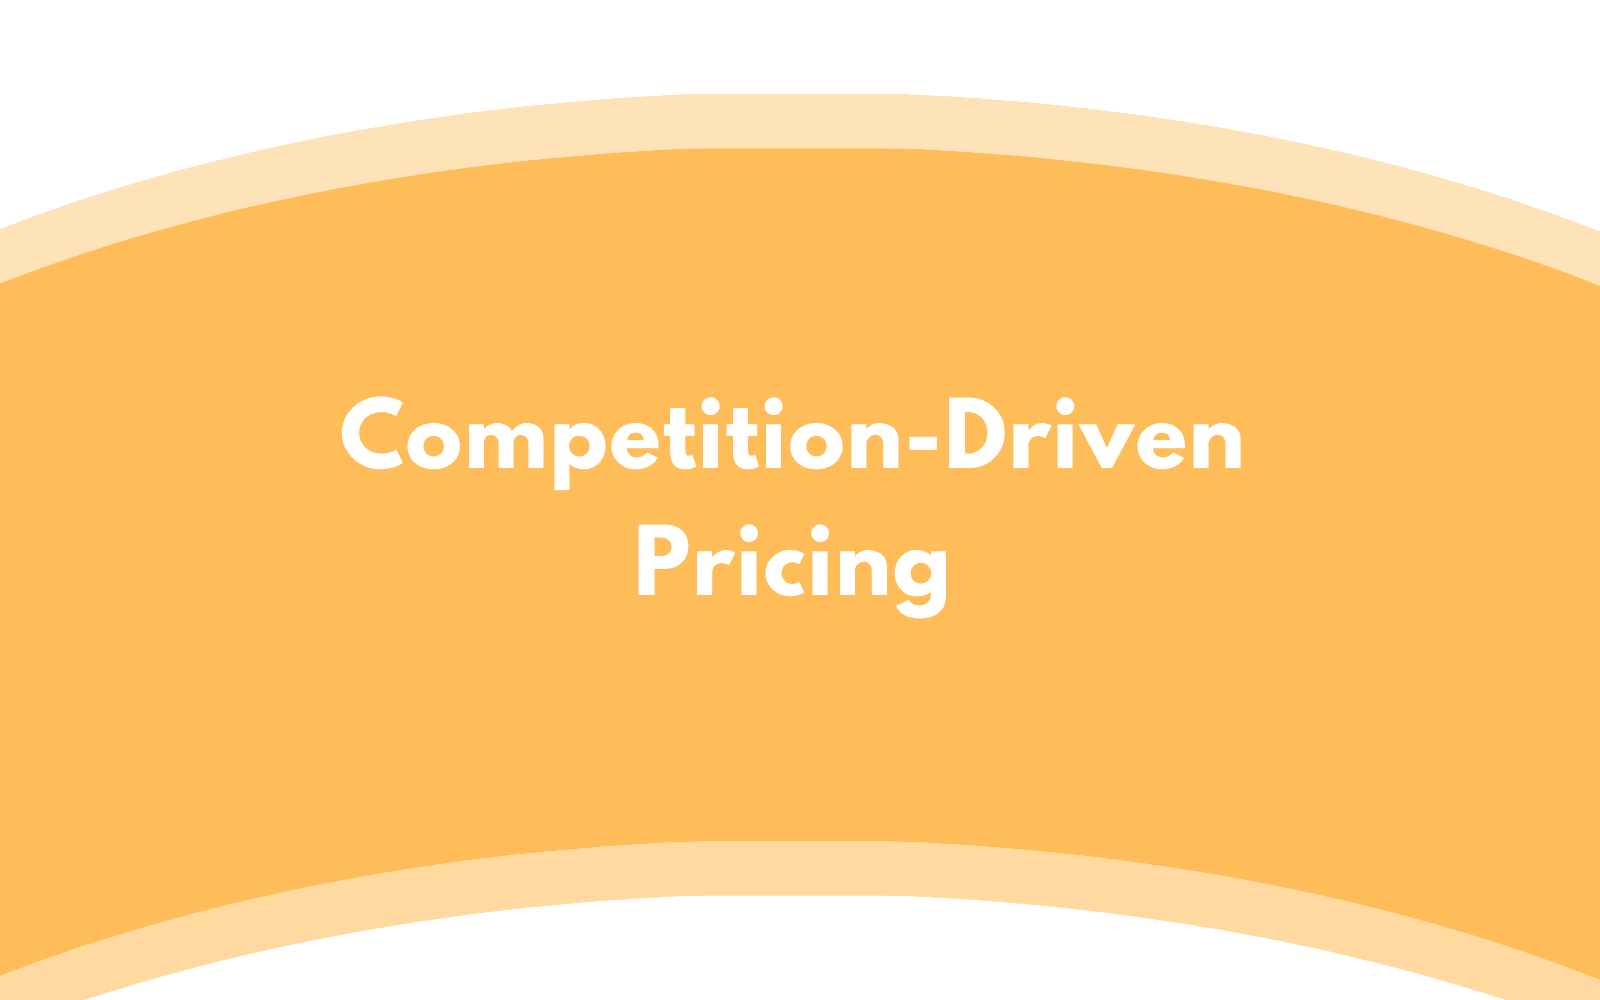 Định giá dựa vào cạnh tranh (Competition-Driven Pricing) là gì?